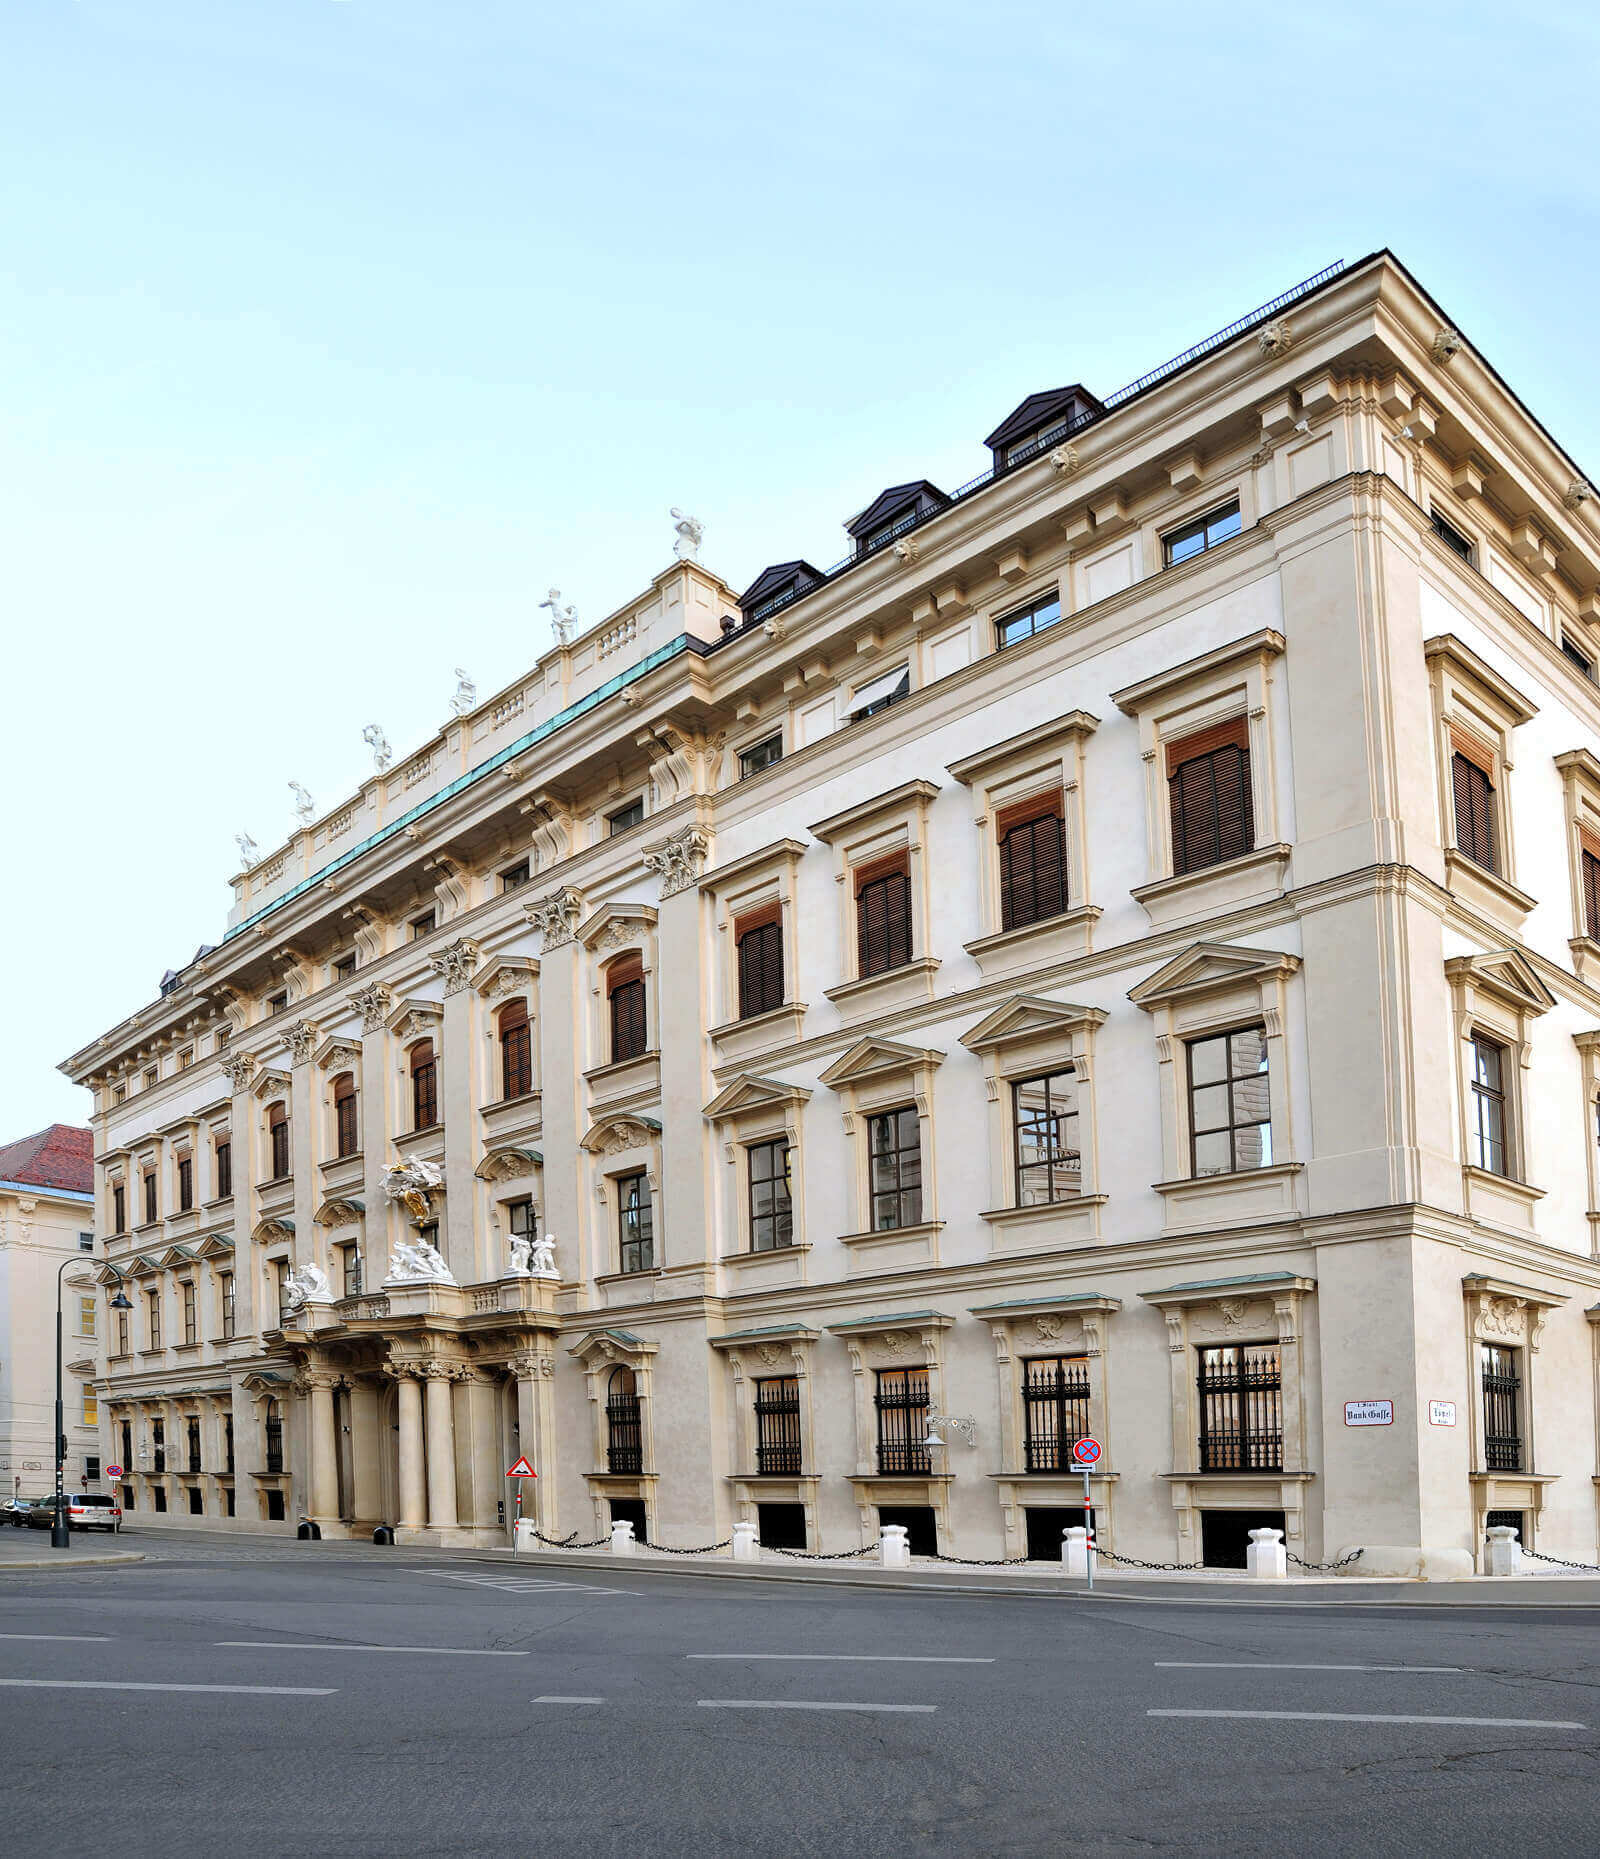 Palais Liechtenstein Vienna, frontage